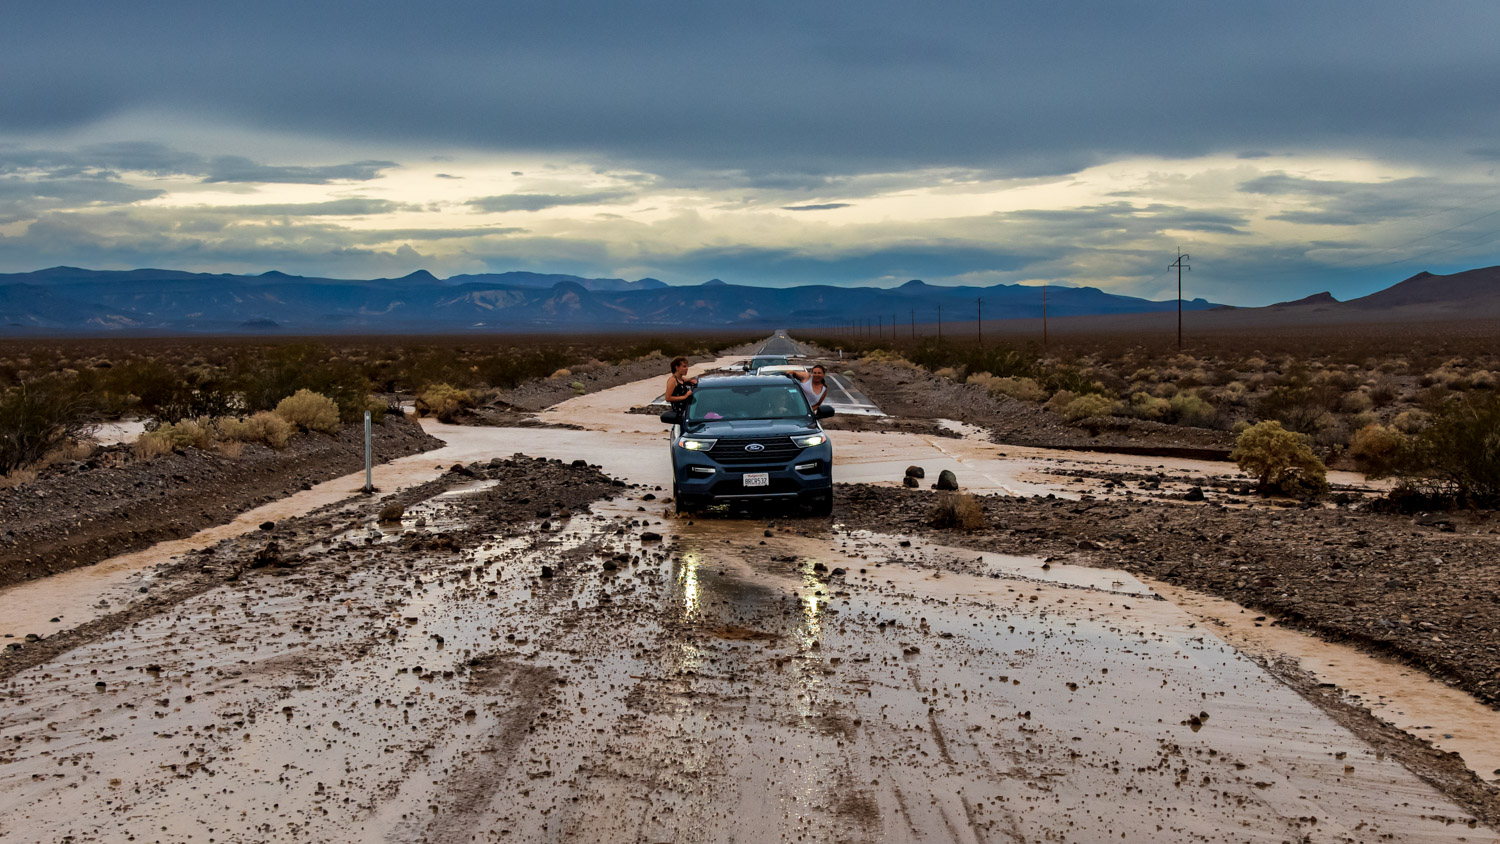 Im wilden Westen der USA | Teil 6: Springflut im Death Valley